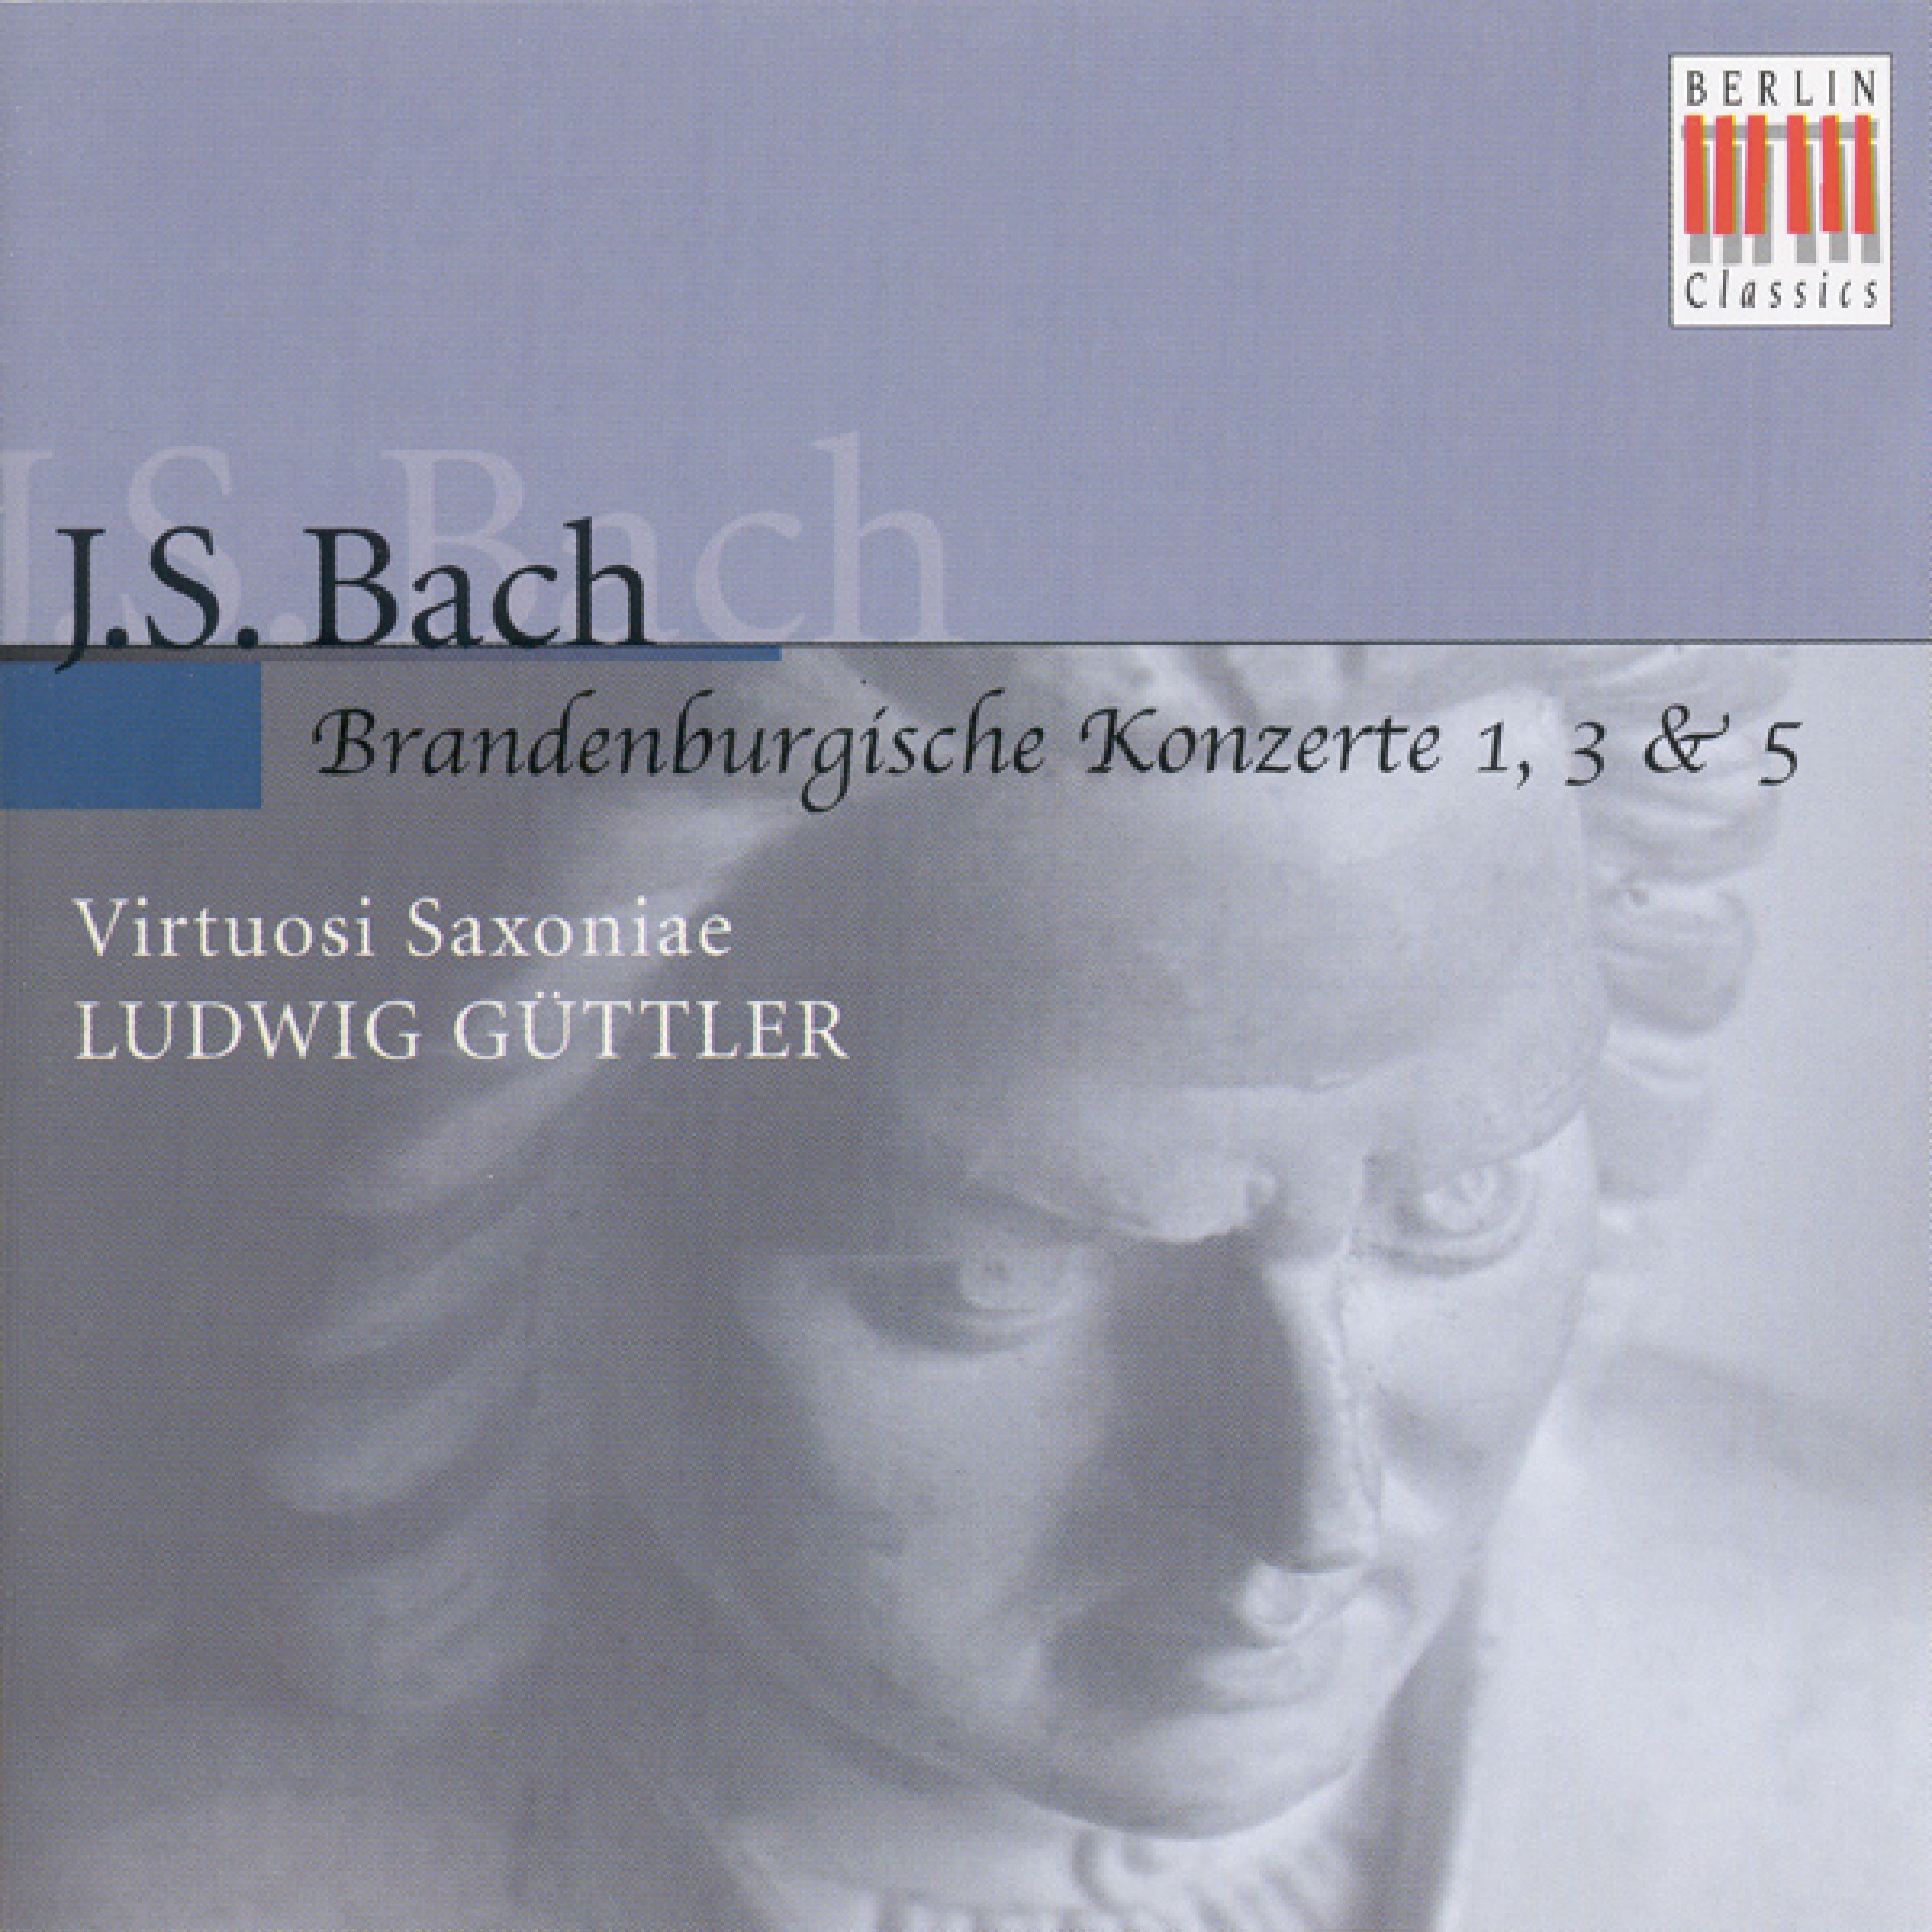 Brandenburg Concerto No. 1 in F Major, BWV 1046: IV. Menuetto - Trio I - Polonaise - Trio II